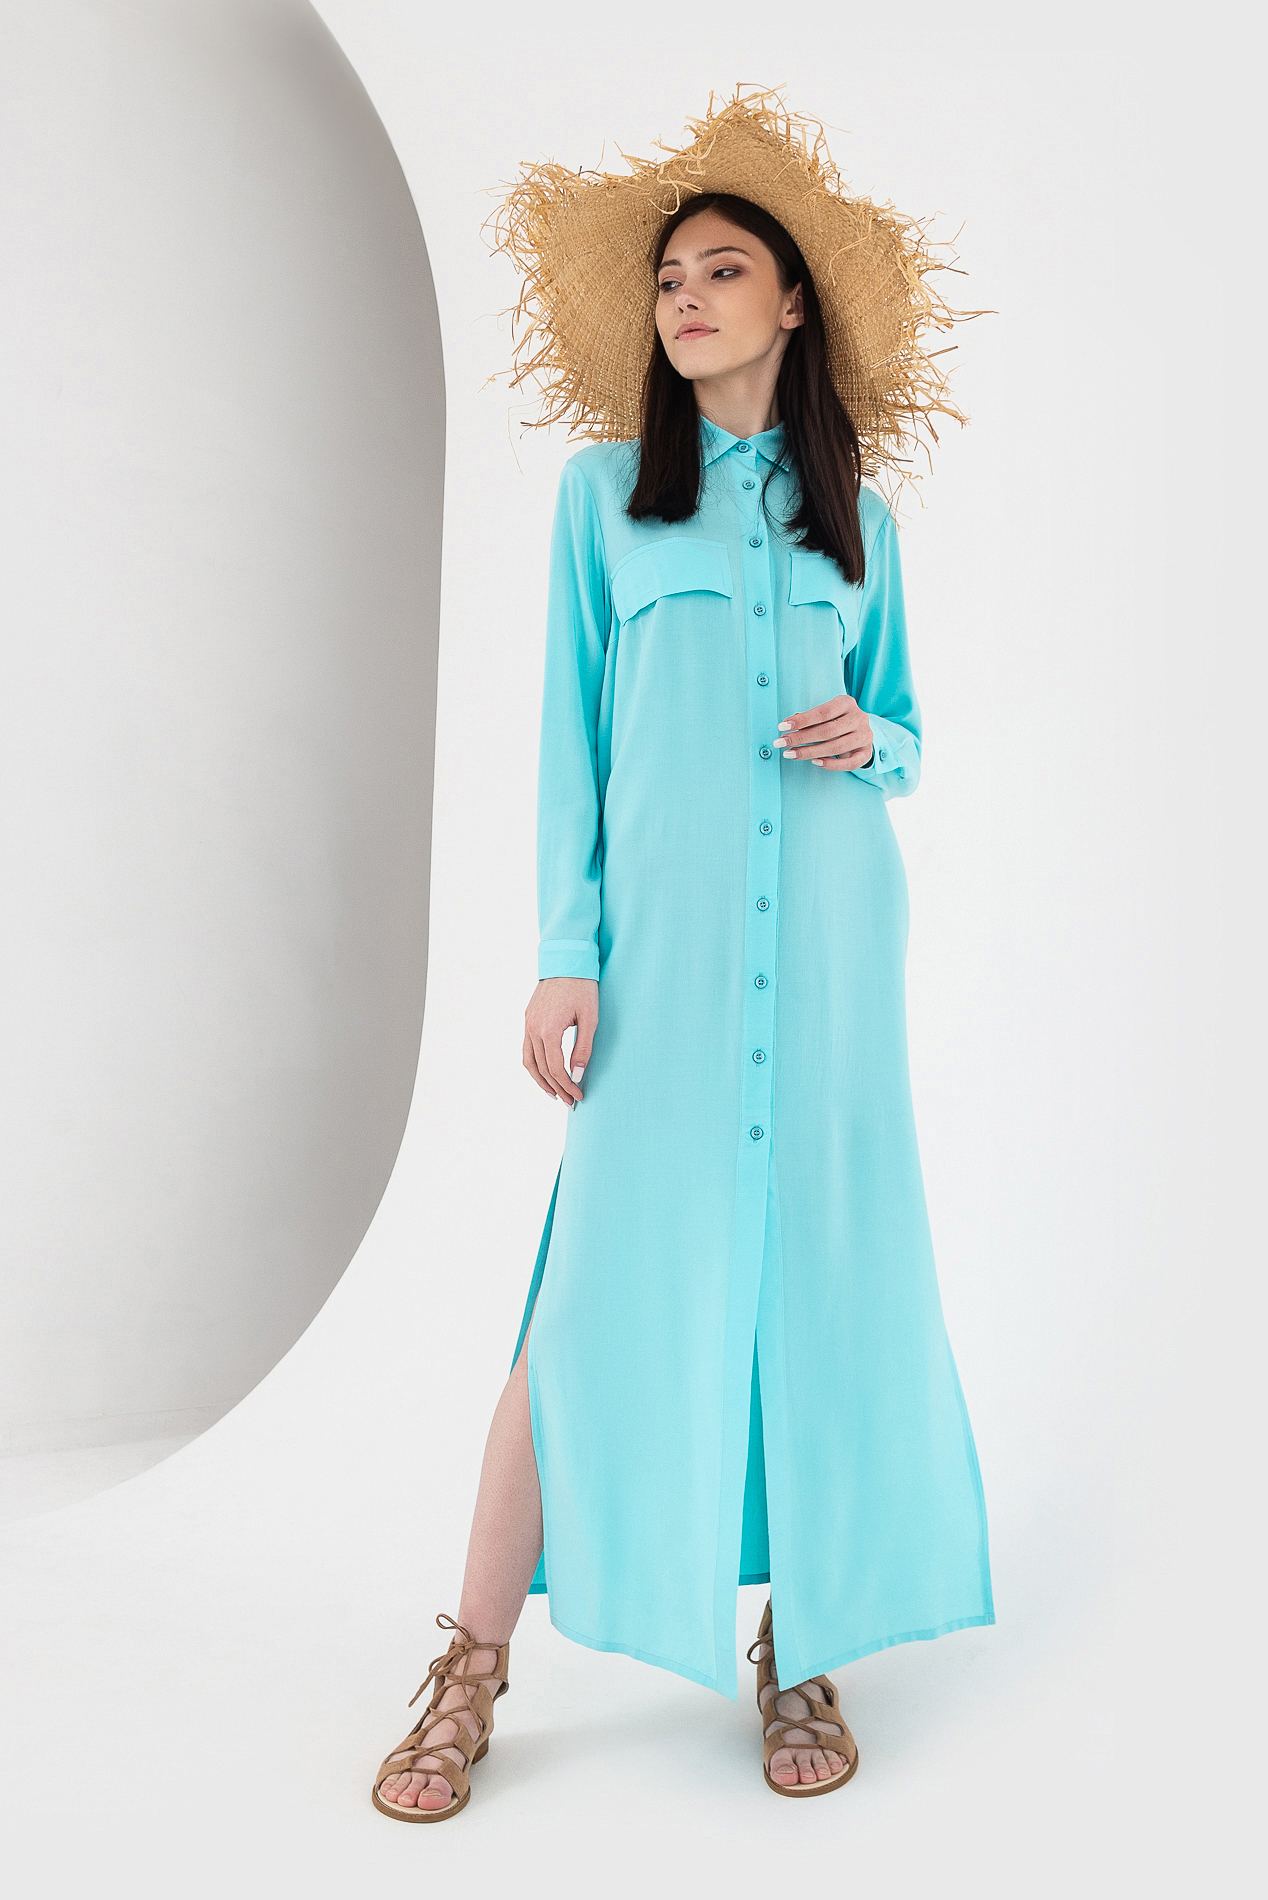 Купить Платье Рубашку В Интернет Магазине Украина